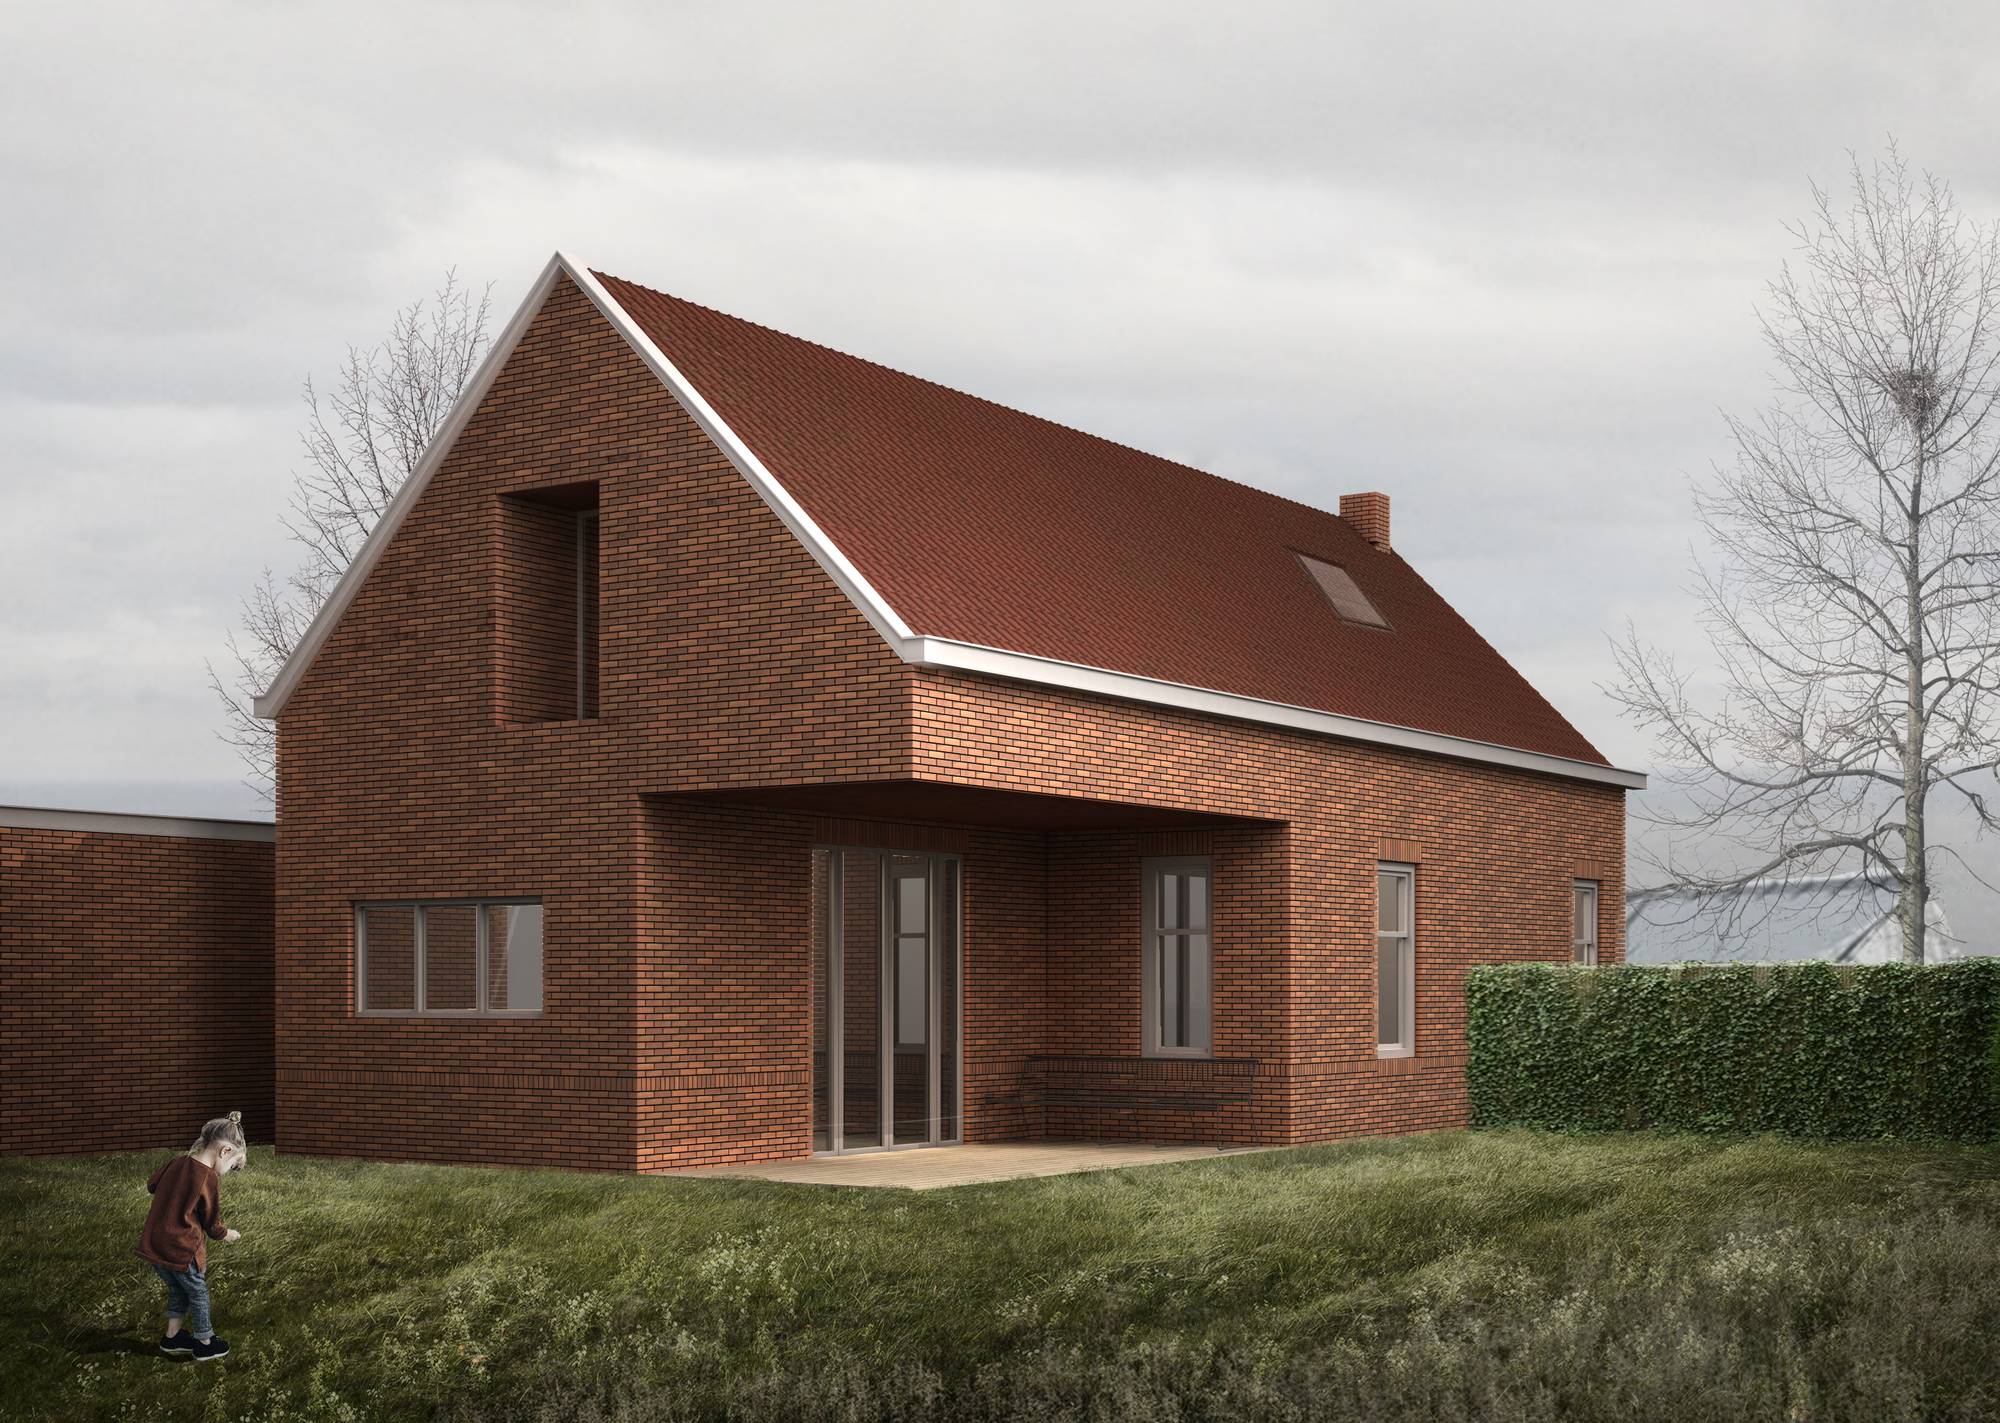 3D visualisatie van een woning ontwerp gemaakt door een architectenbureau